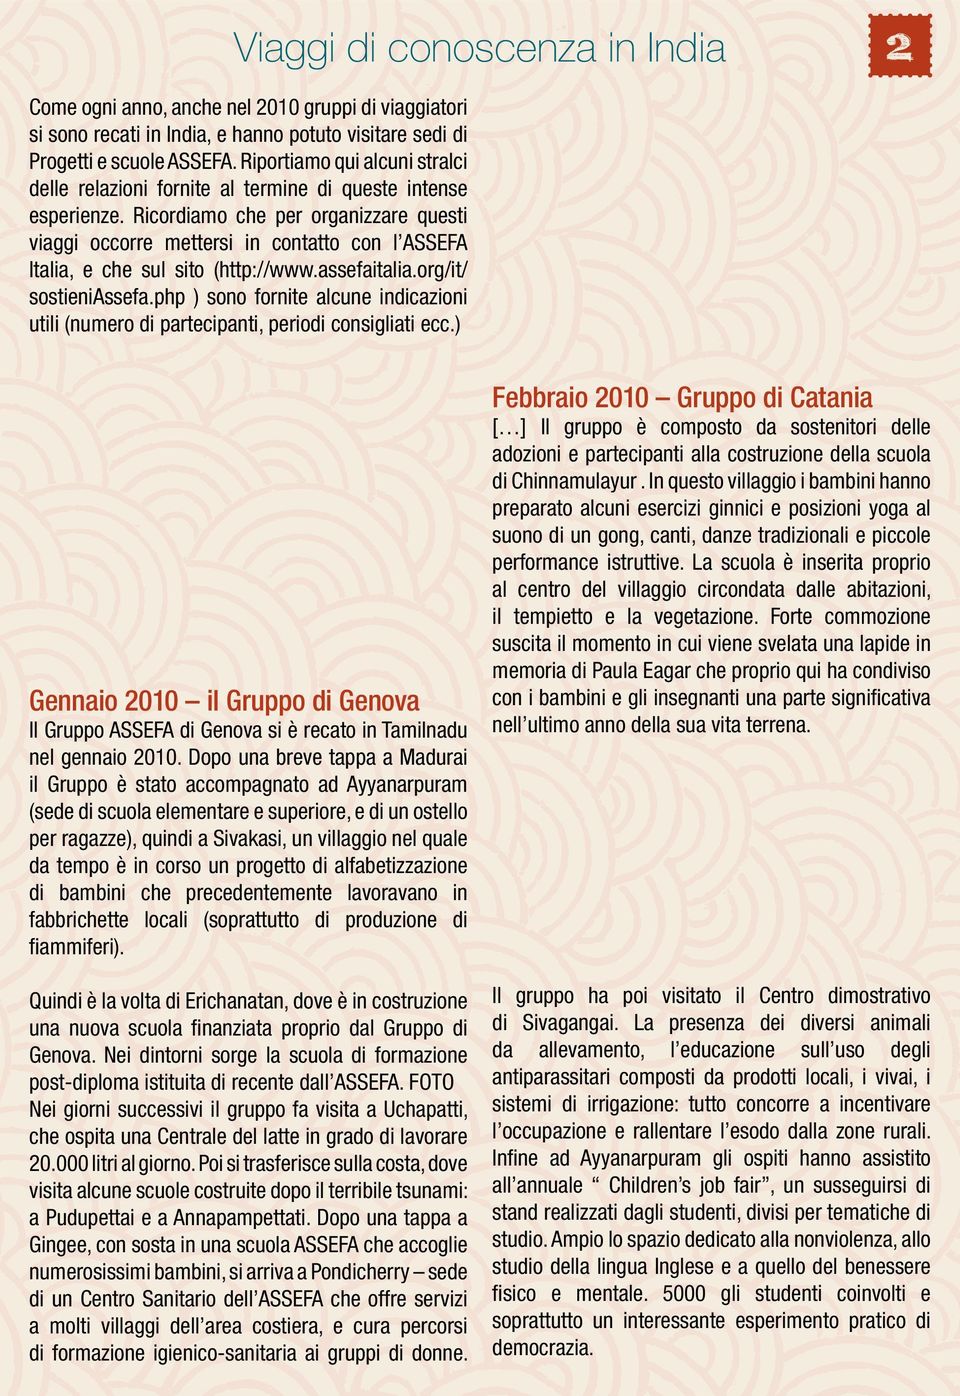 Ricordiamo che per organizzare questi viaggi occorre mettersi in contatto con l ASSEFA Italia, e che sul sito (http://www.assefaitalia.org/it/ sostieniassefa.